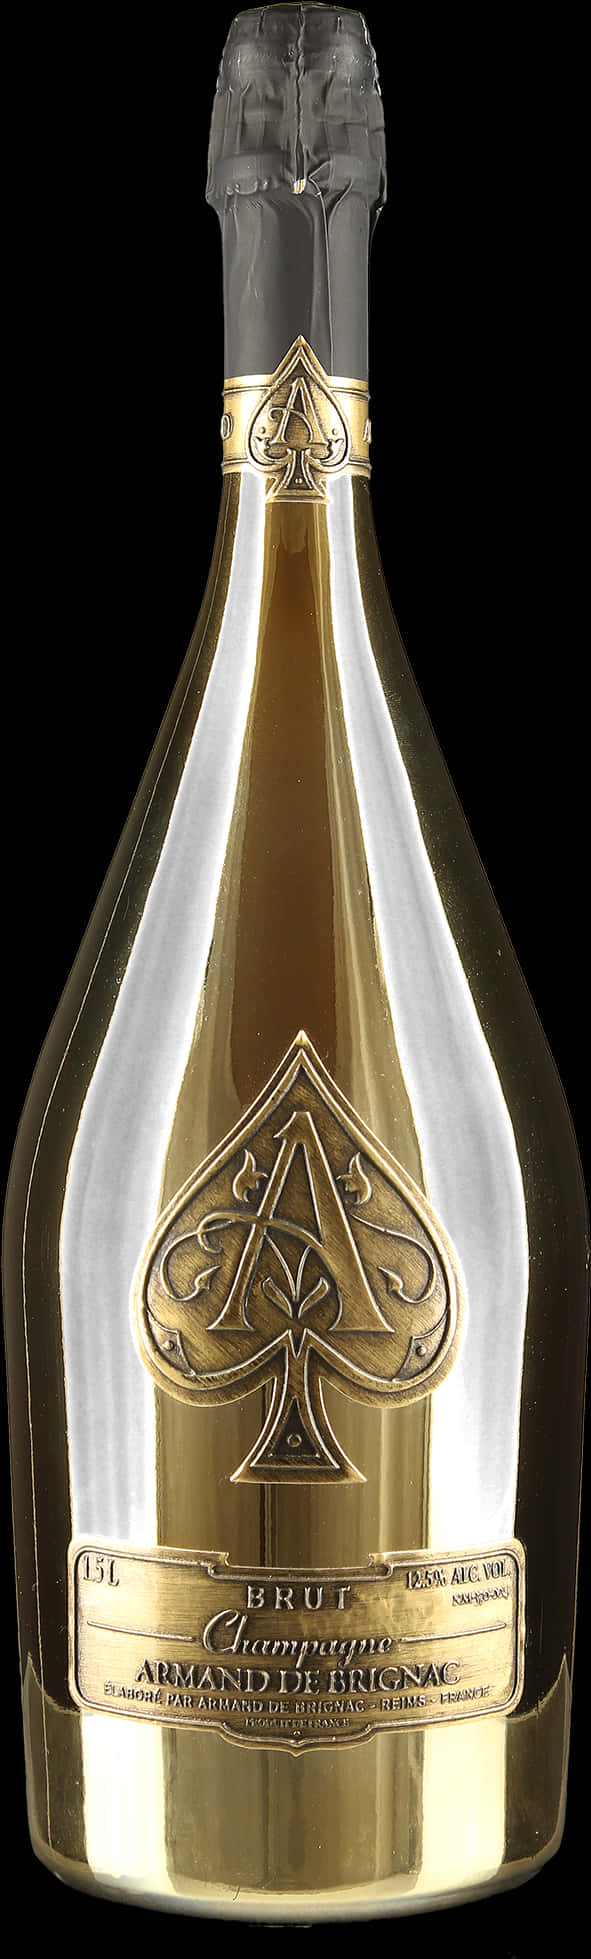 Elegant Champagne Bottle PNG